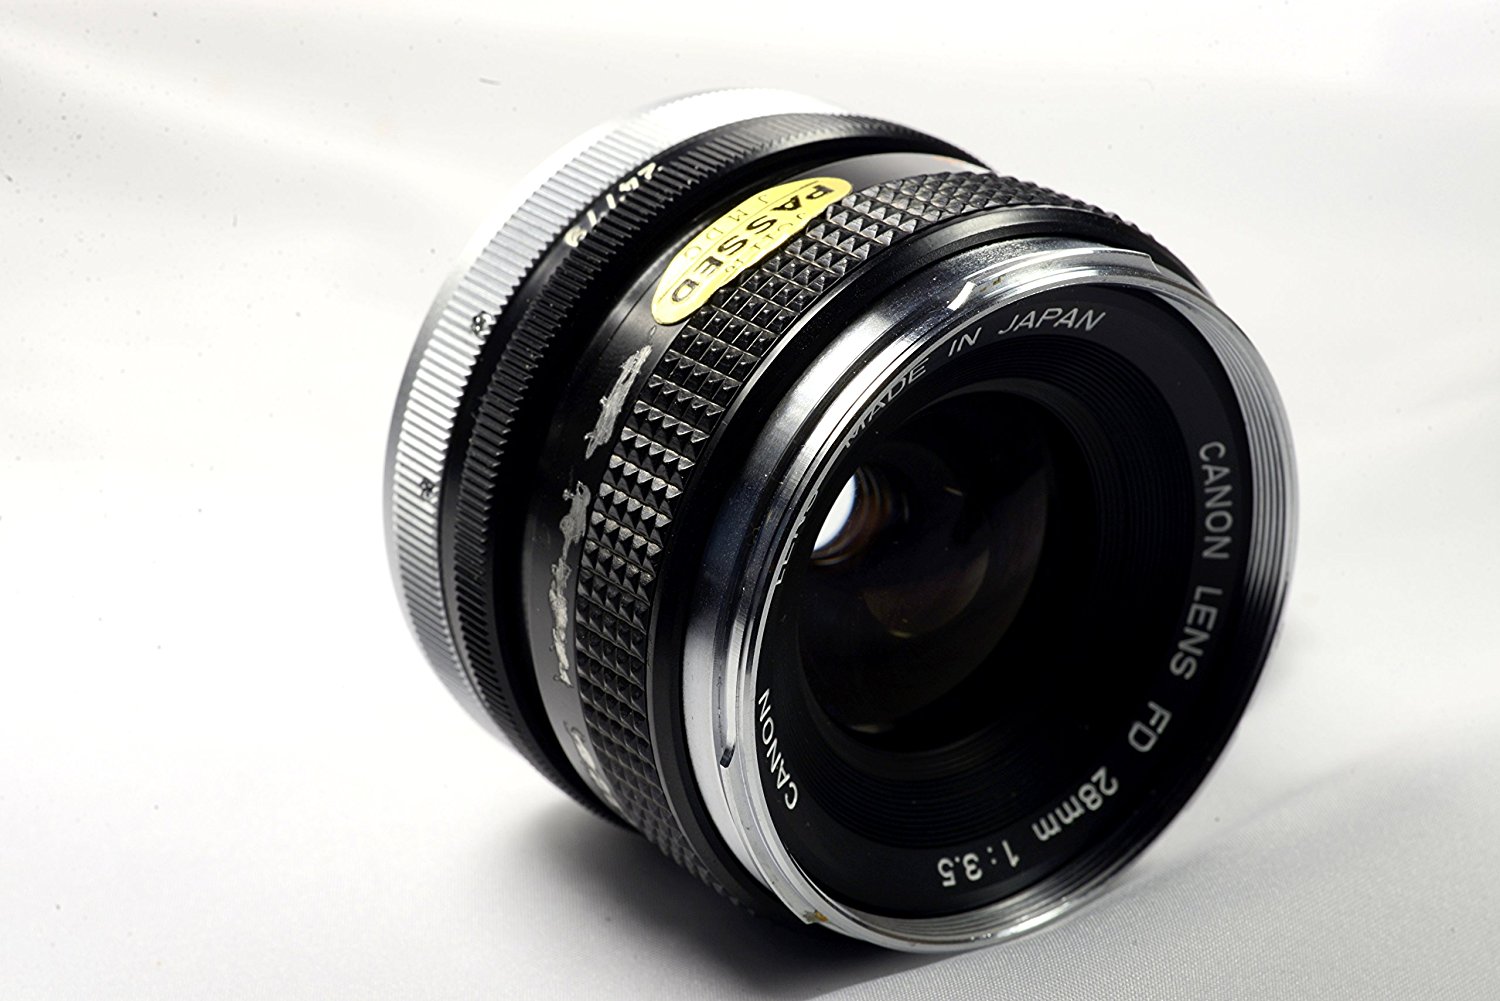 Canon Lens FD 28mm F2.8 Festbrennweite